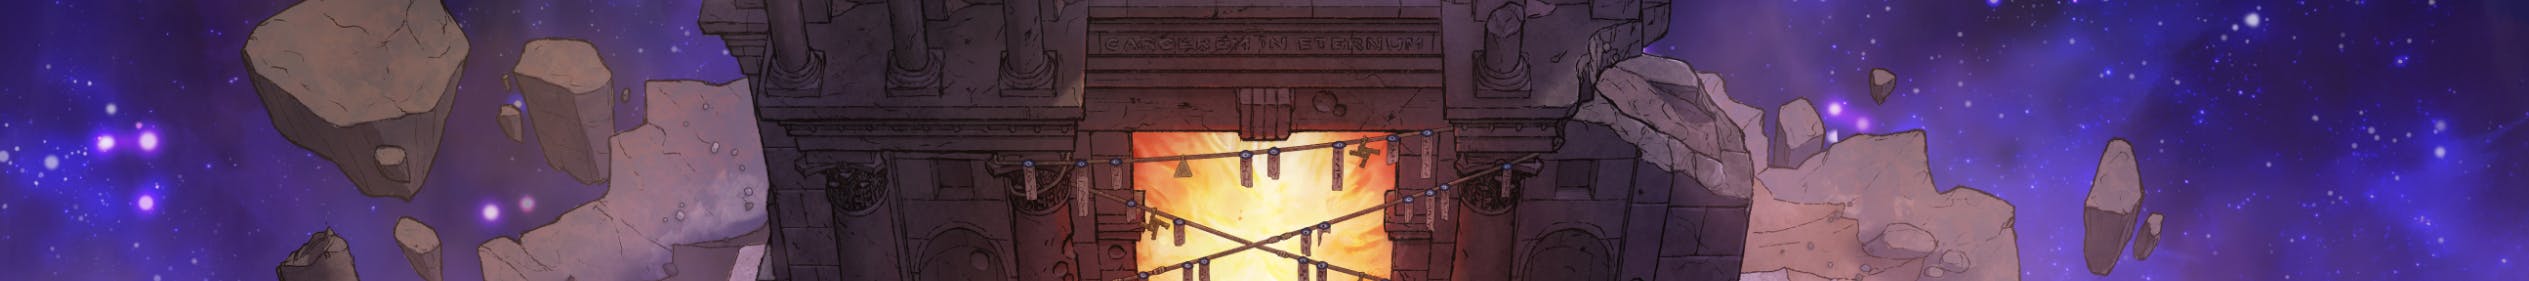 Wizard Prison banner